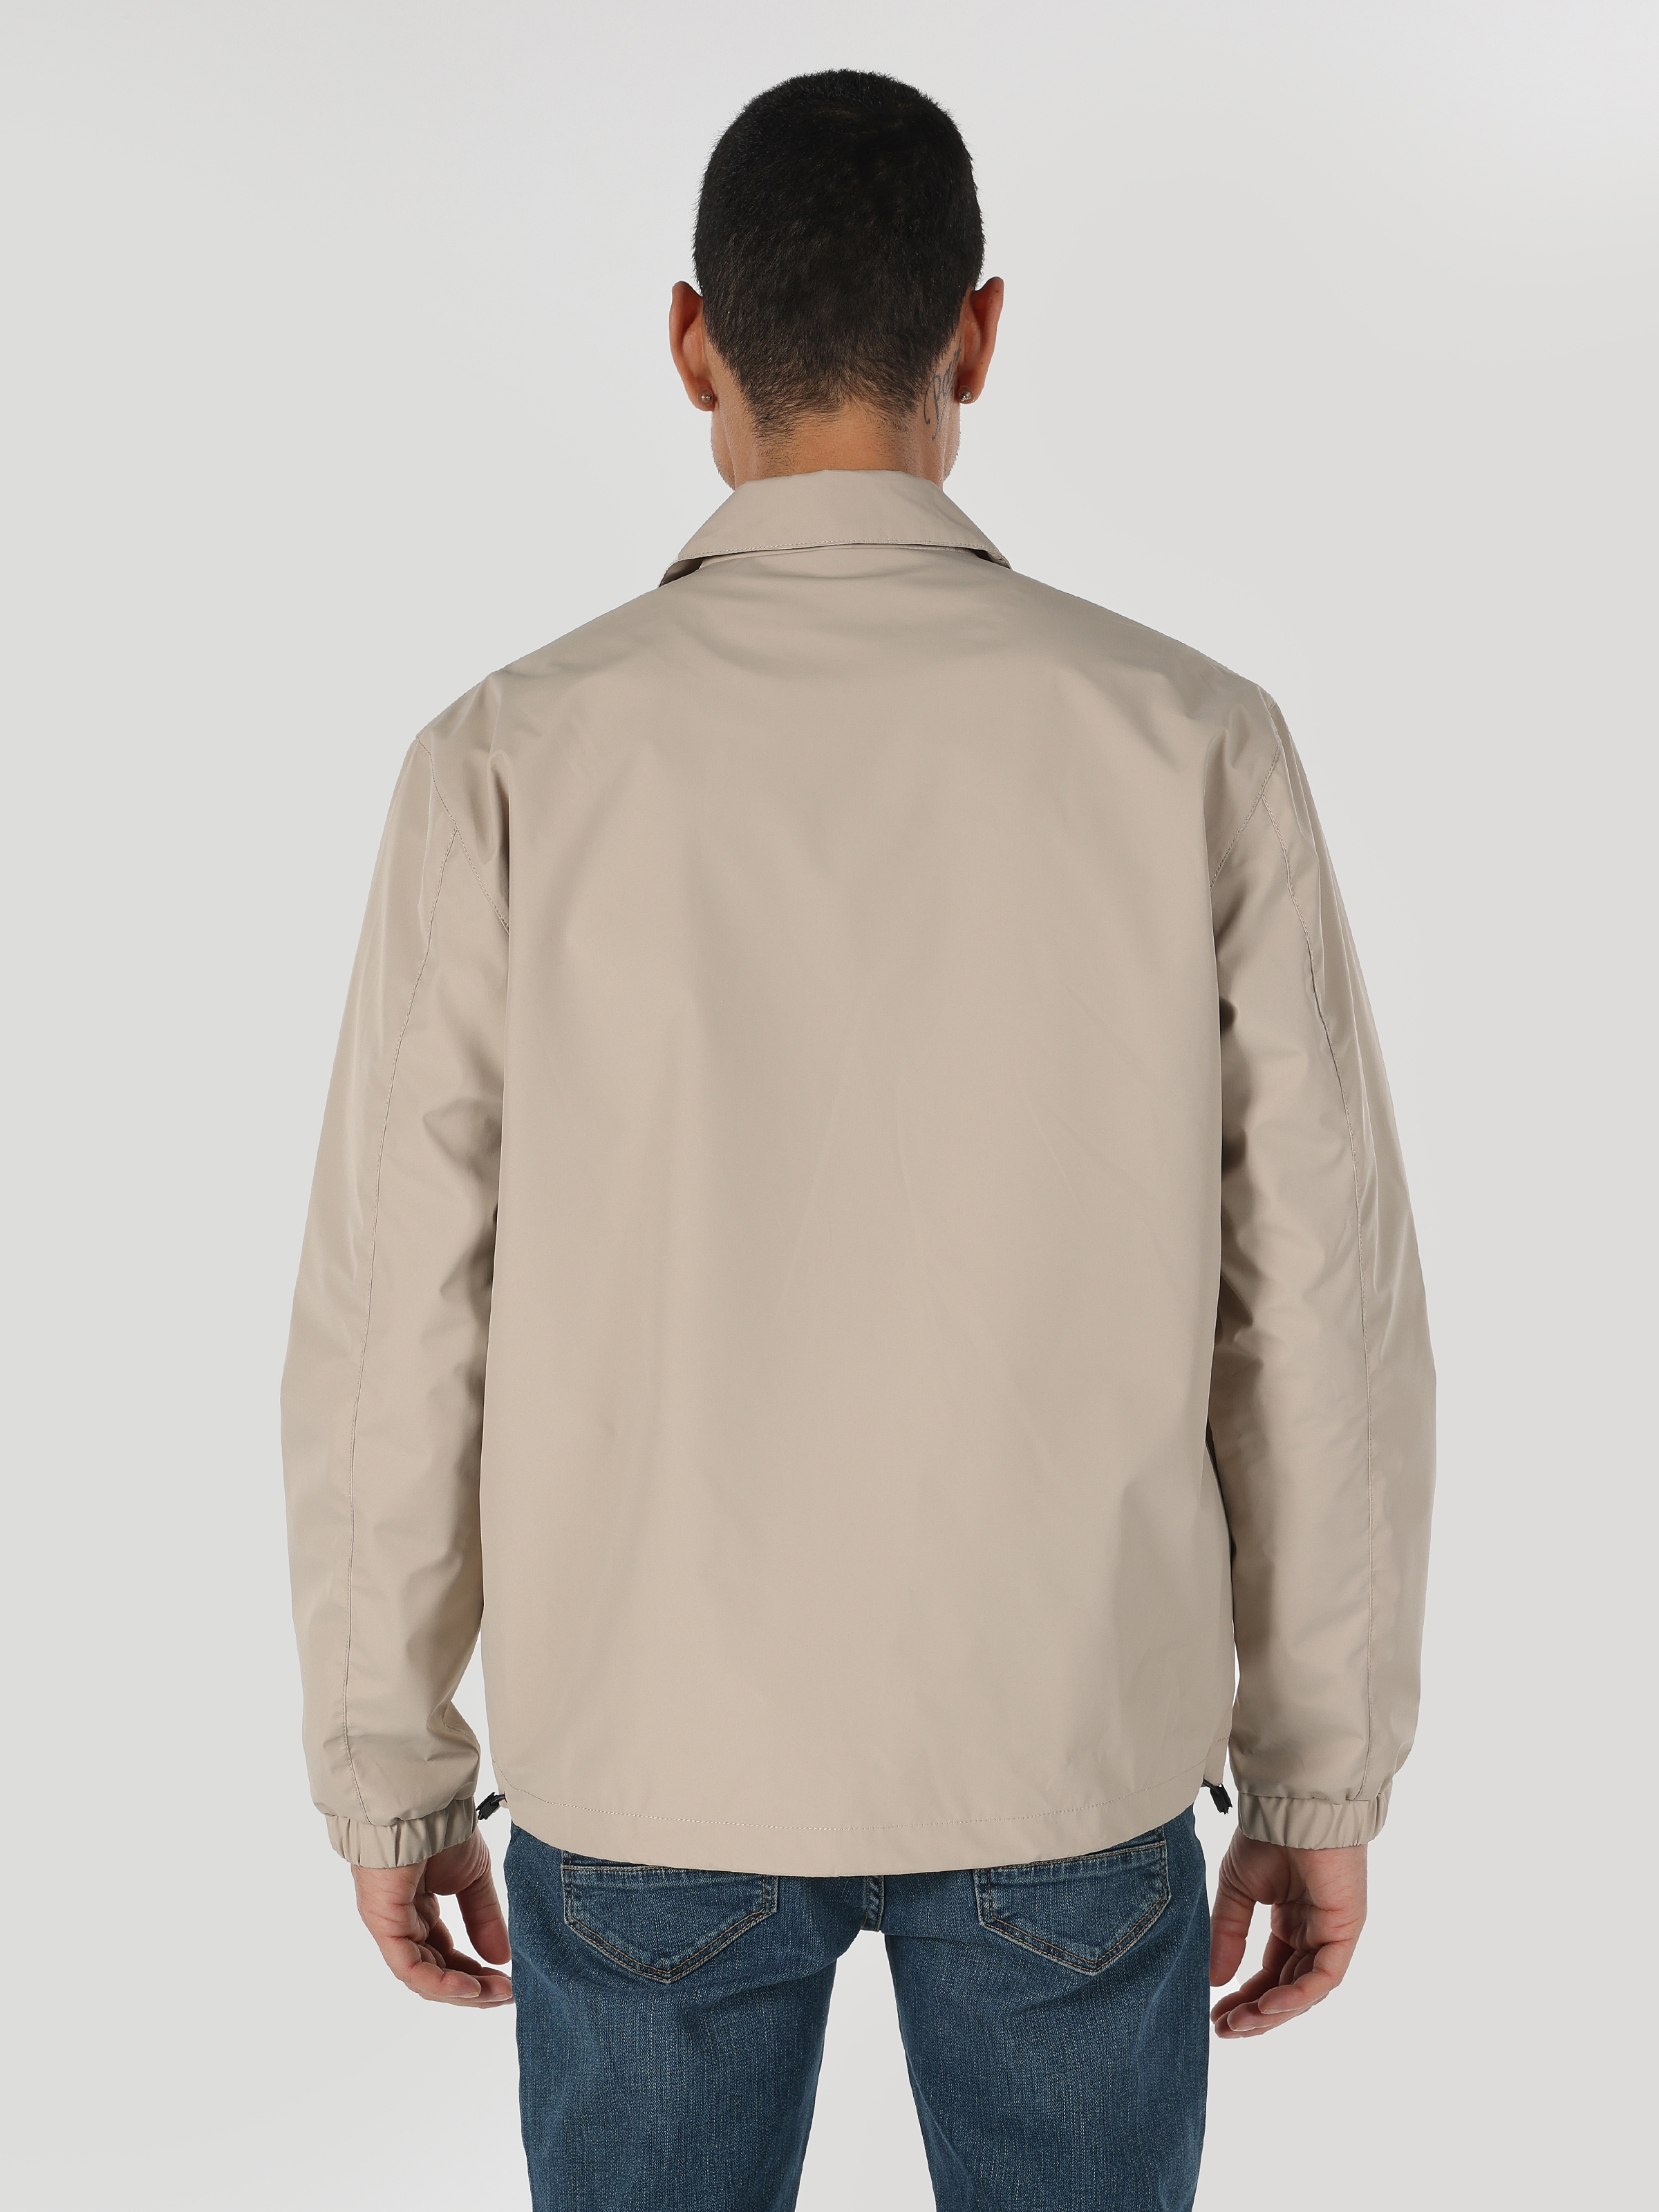 Показати інформацію про Куртка Чоловіча Бежева З Кишенями На Ґудзиках Класичного Крою Cl1062446